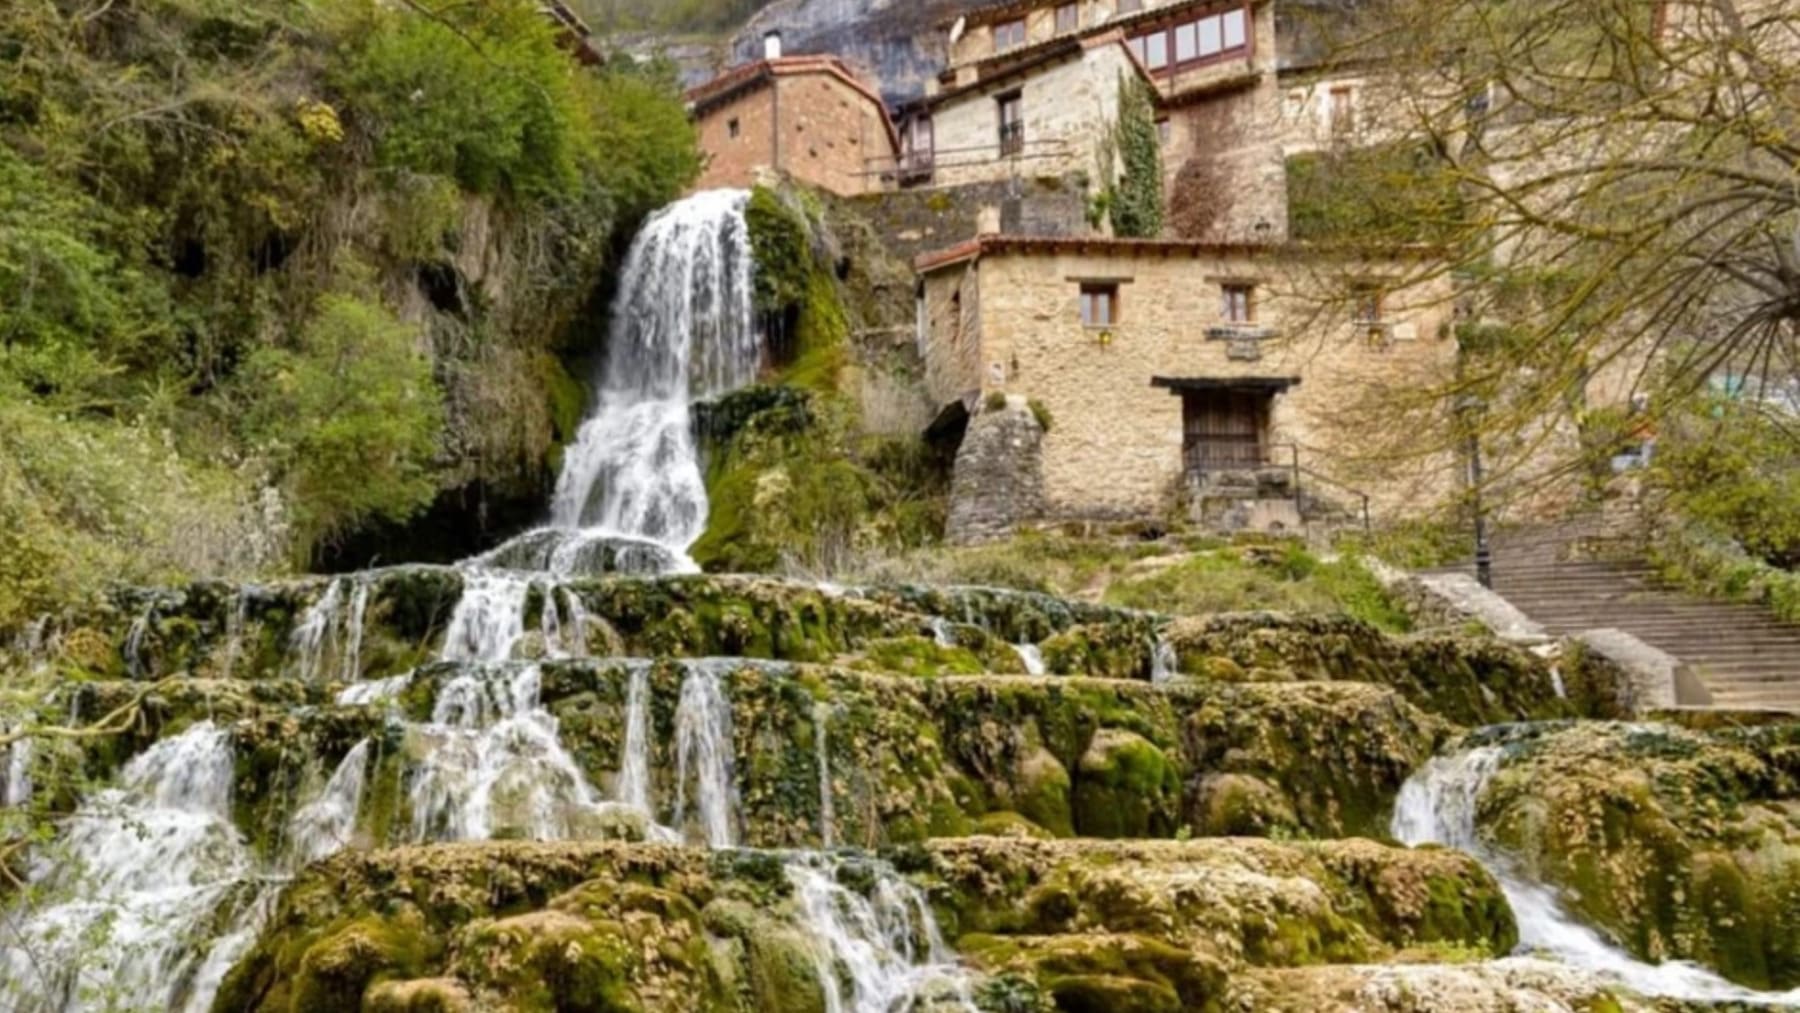 Este pueblo escondido de Burgos tiene unas cascadas alucinantes. Los turistas empiezan a hacer cola